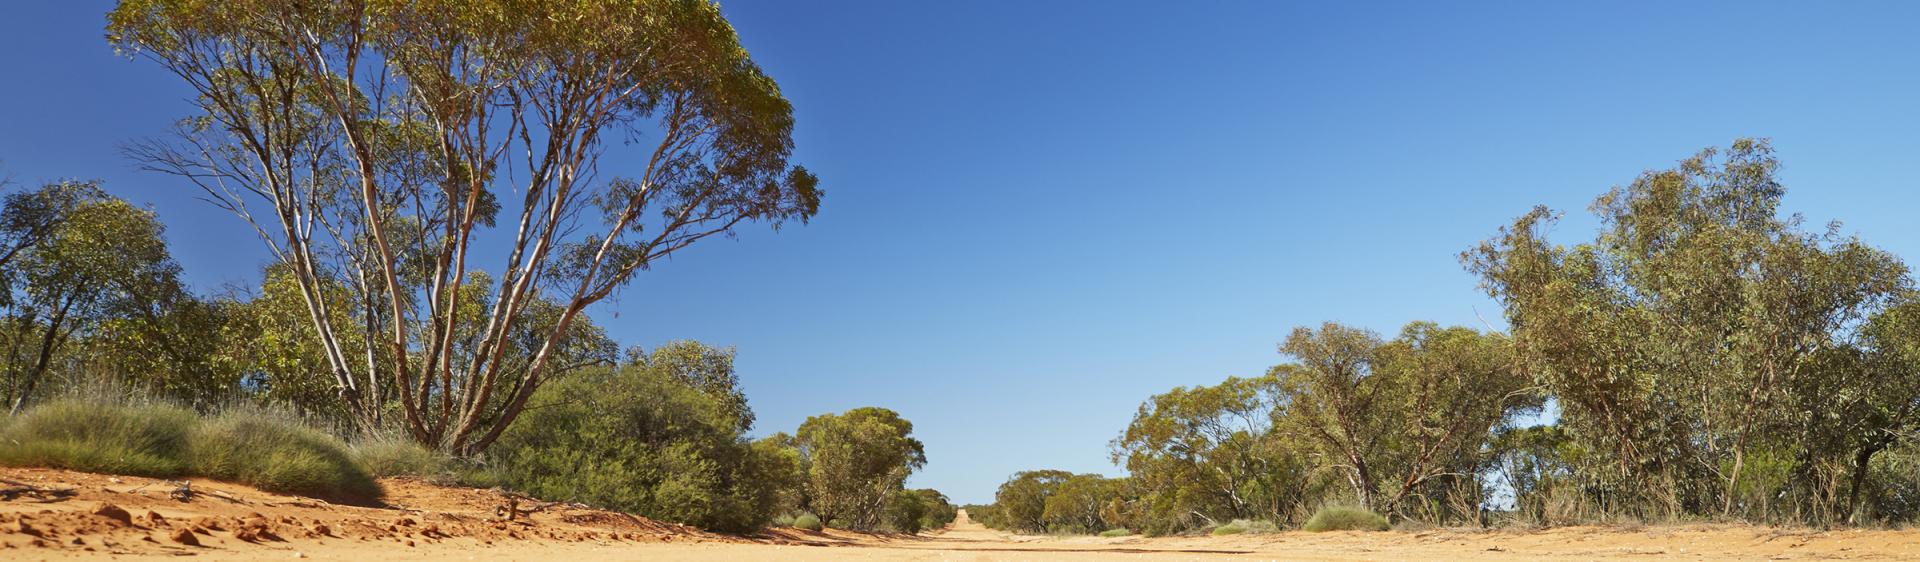 布罗肯希尔蒙哥国家公园步行道 (Mungo National Park track, Broken Hill)